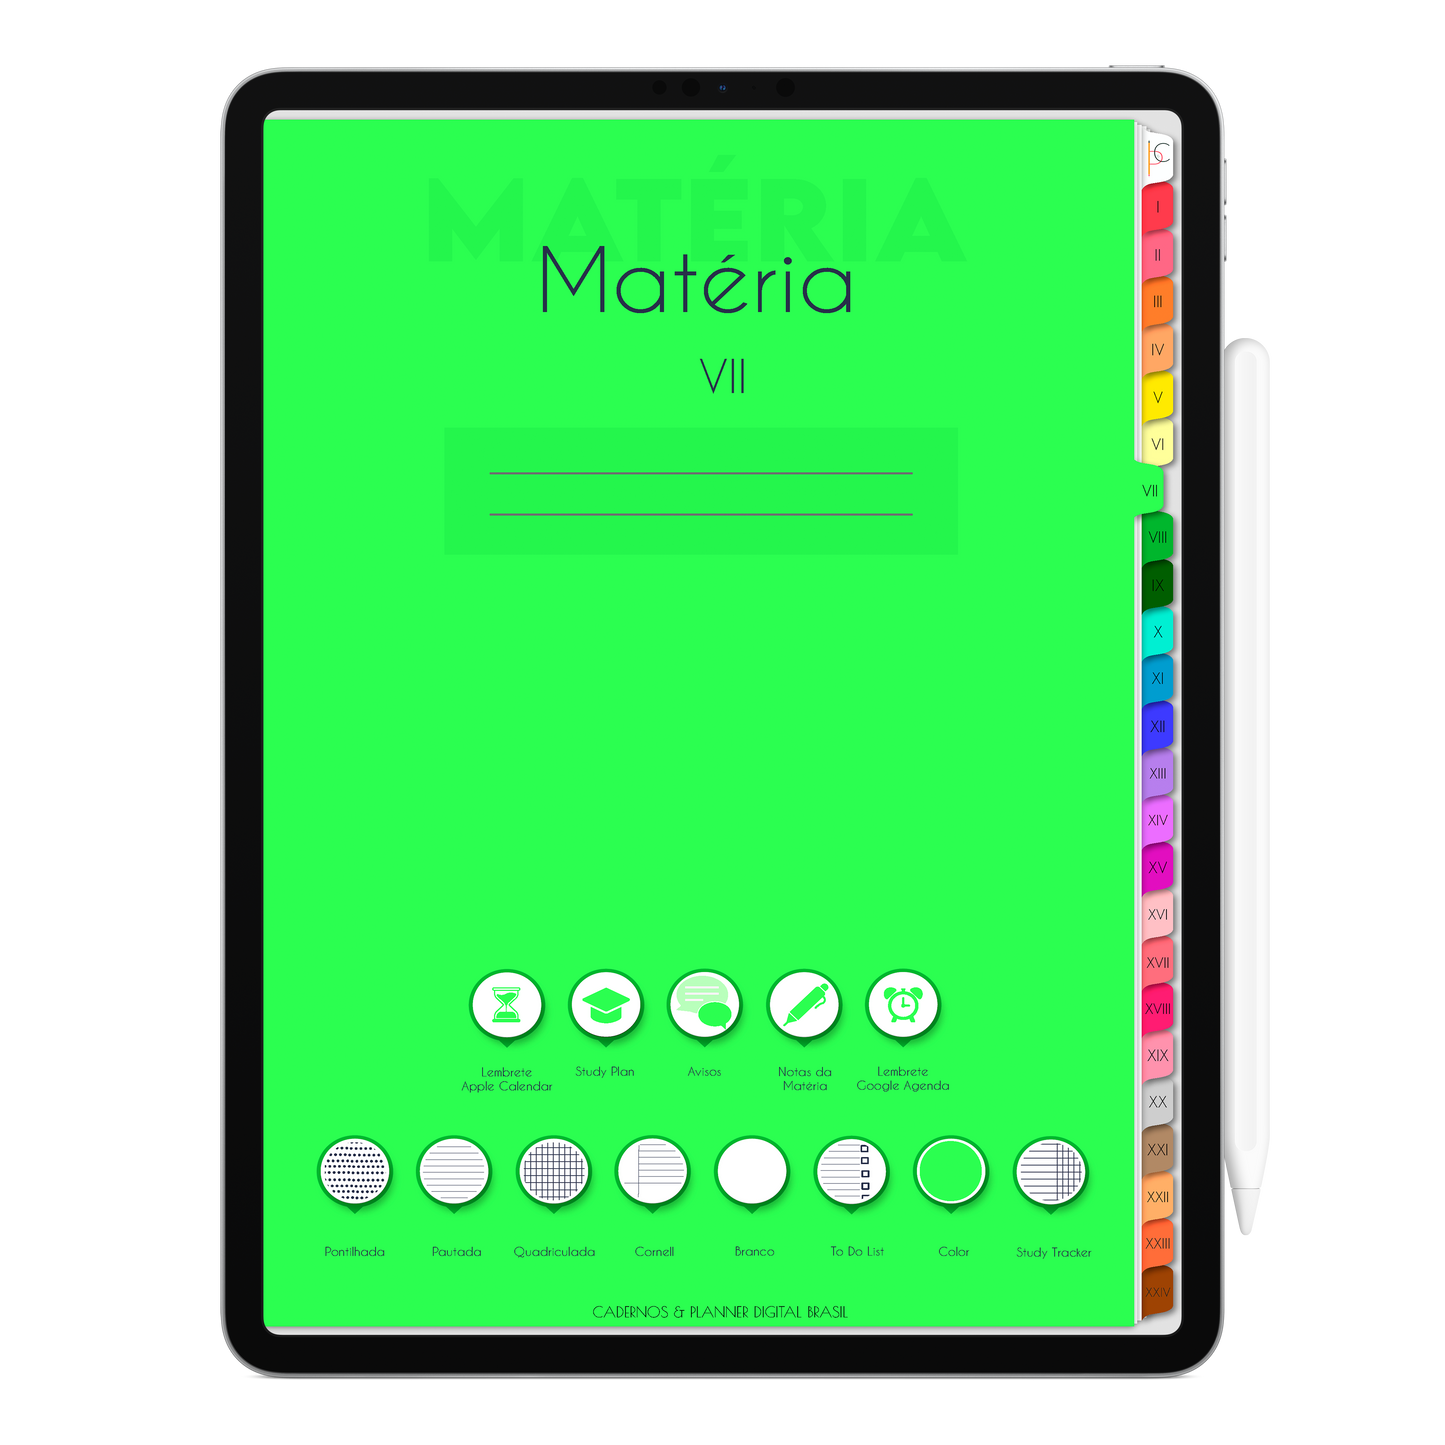 Caderno Digital Colors 24 Matérias Espaço e Energia • Para iPad e Tablet Android • Download instantâneo